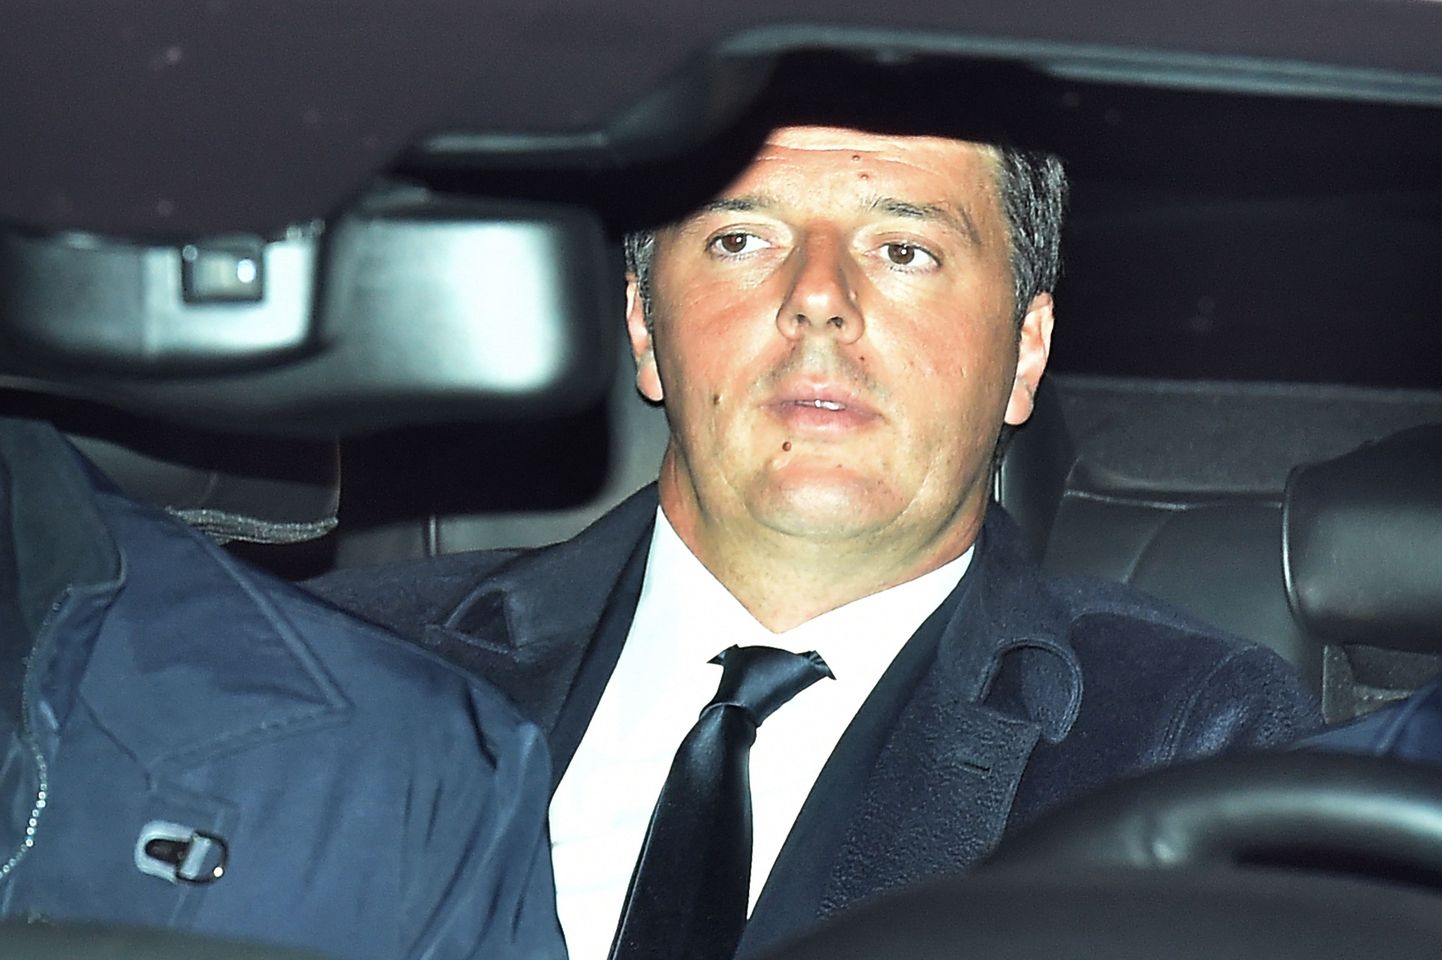 Маттео Ренци пребывает в Квиринальский дворец чтобы подать официальное заявление о собственной отставке.